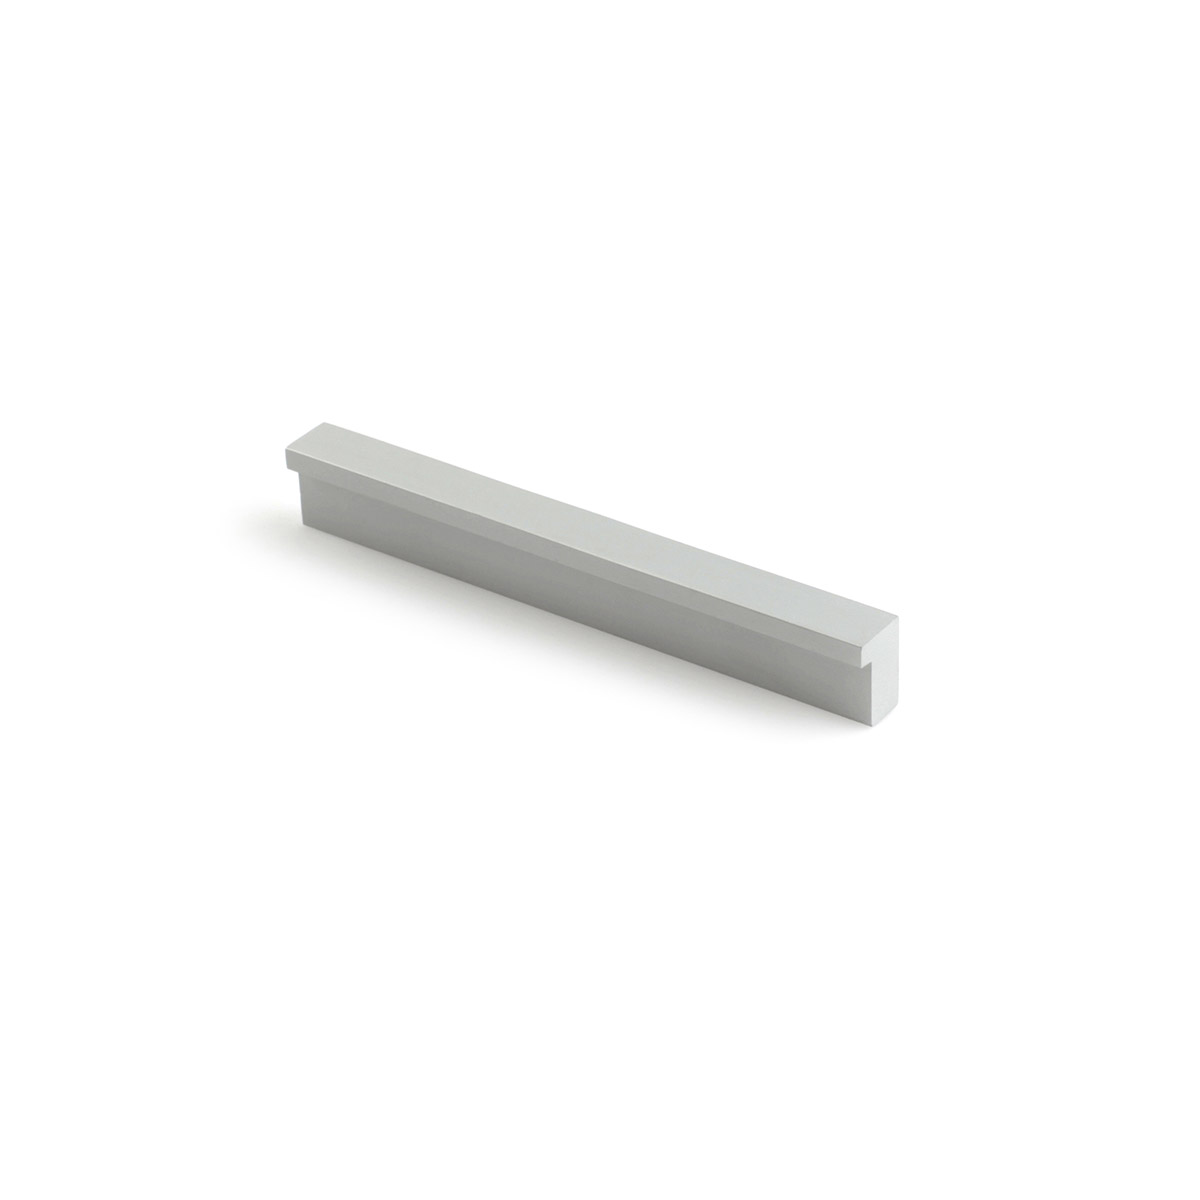 Asa de aluminio con acabado anodizado mate, dimensiones:120x12x18mm y entrepuntos:96mm